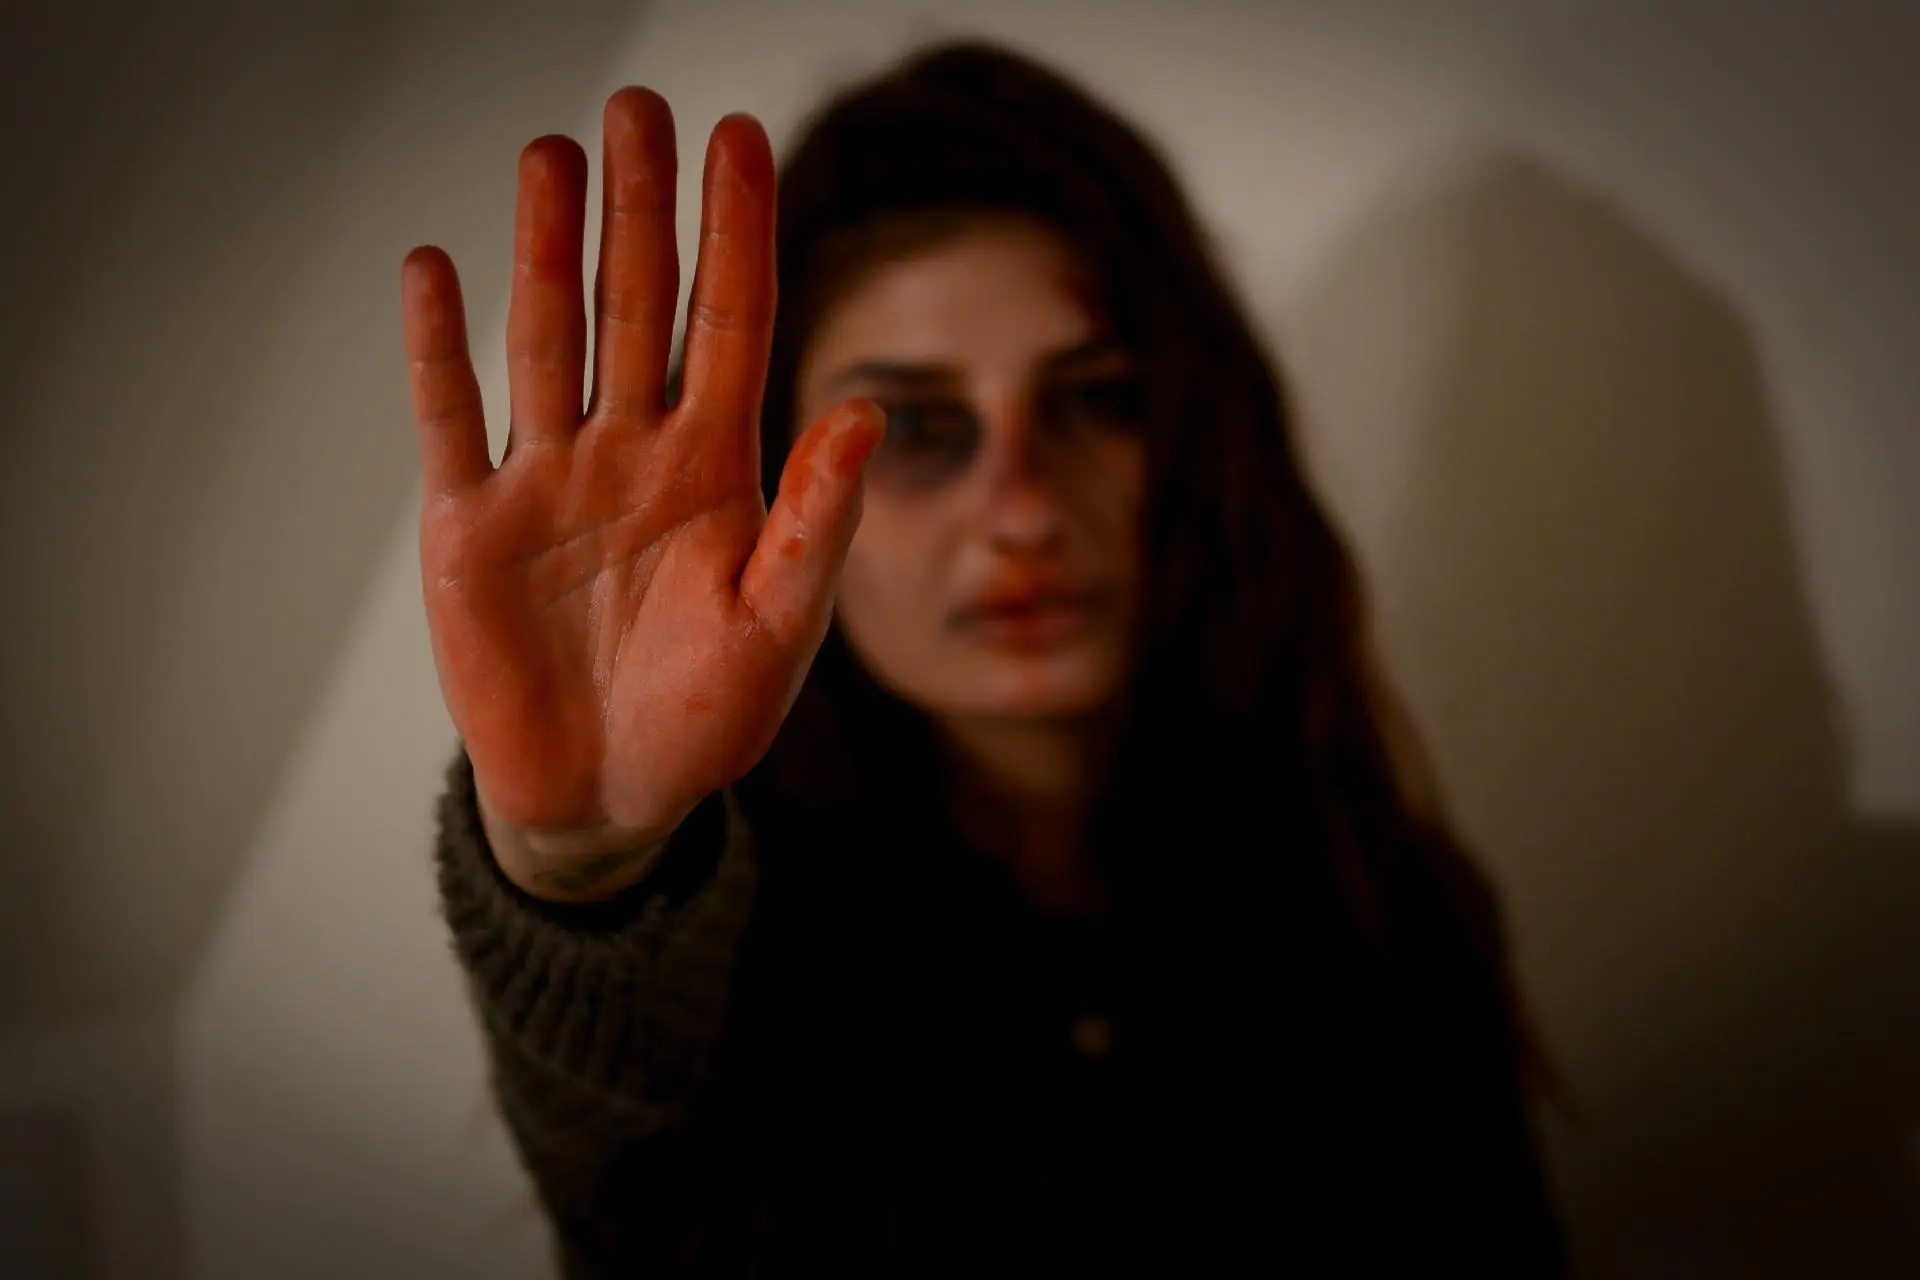 violenza sulle donne, dopo il 25 novembre è andata peggio